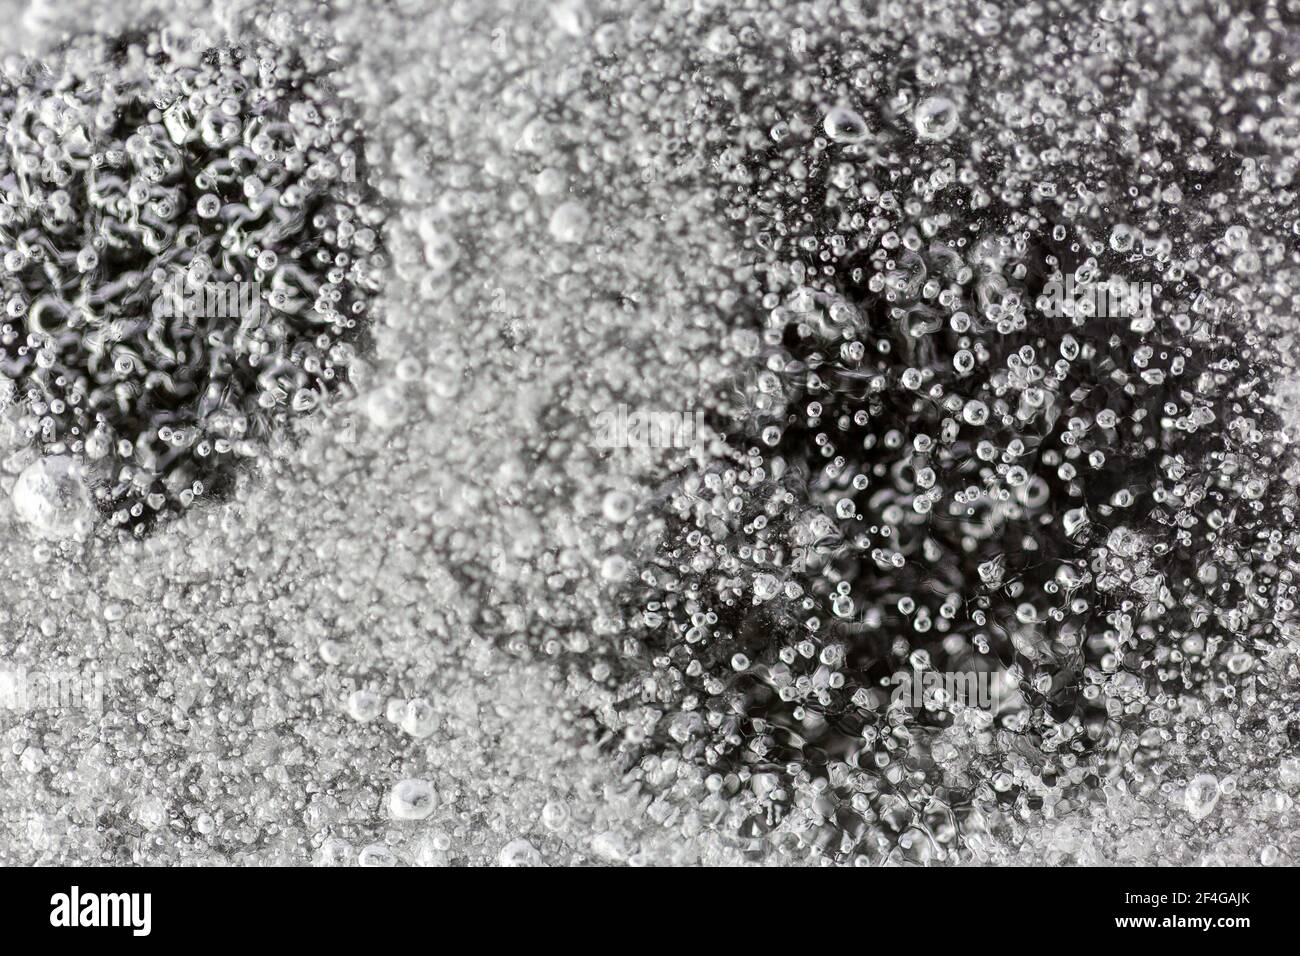 Macro shot di minuscole bolle d'aria intrappolate in un foglio di ghiaccio nel giardino, sparato con una luce stroboscopica flash per illuminare il ghiaccio Foto Stock